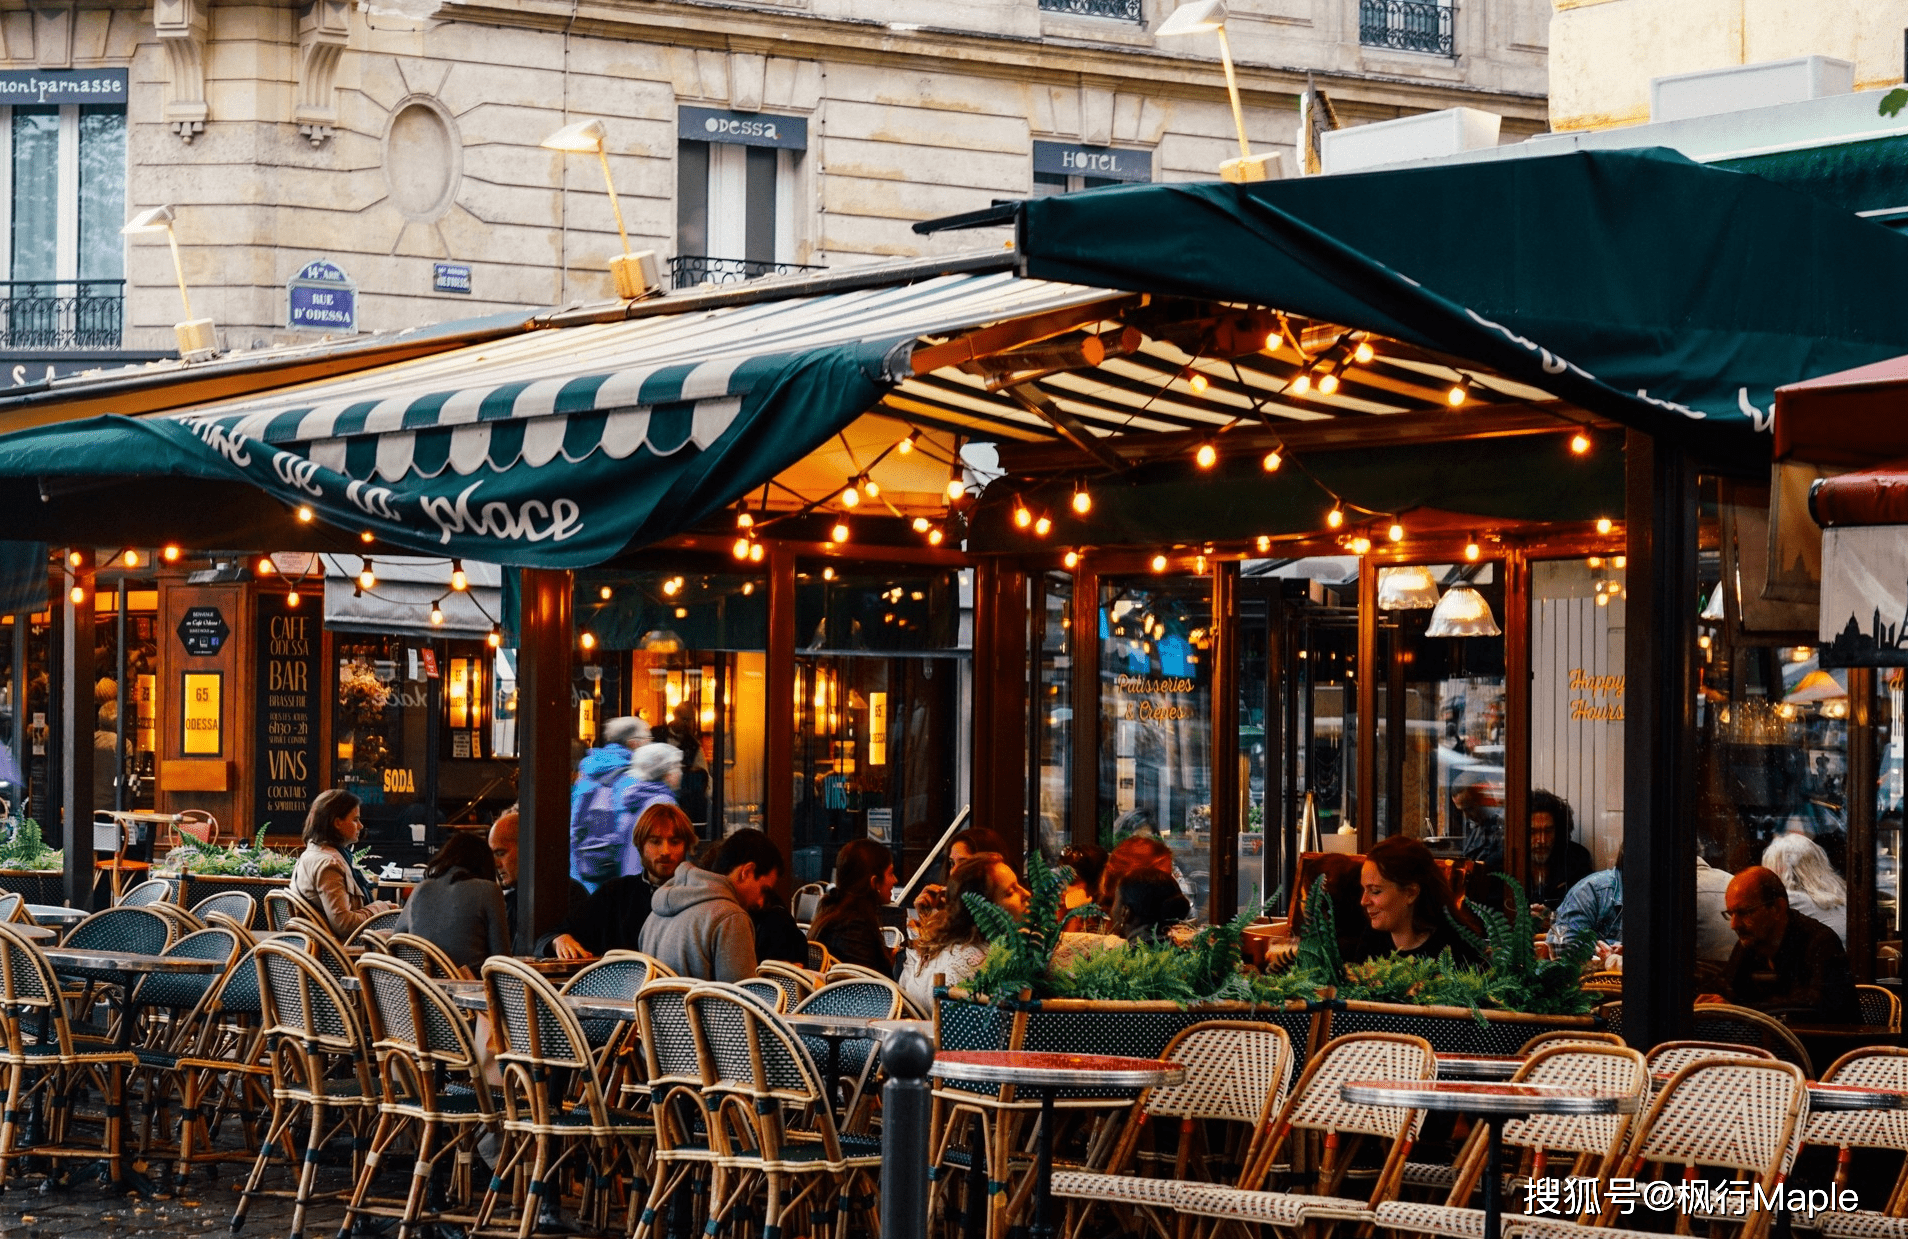 法国的咖啡馆不仅好看,而且一个个大有来头